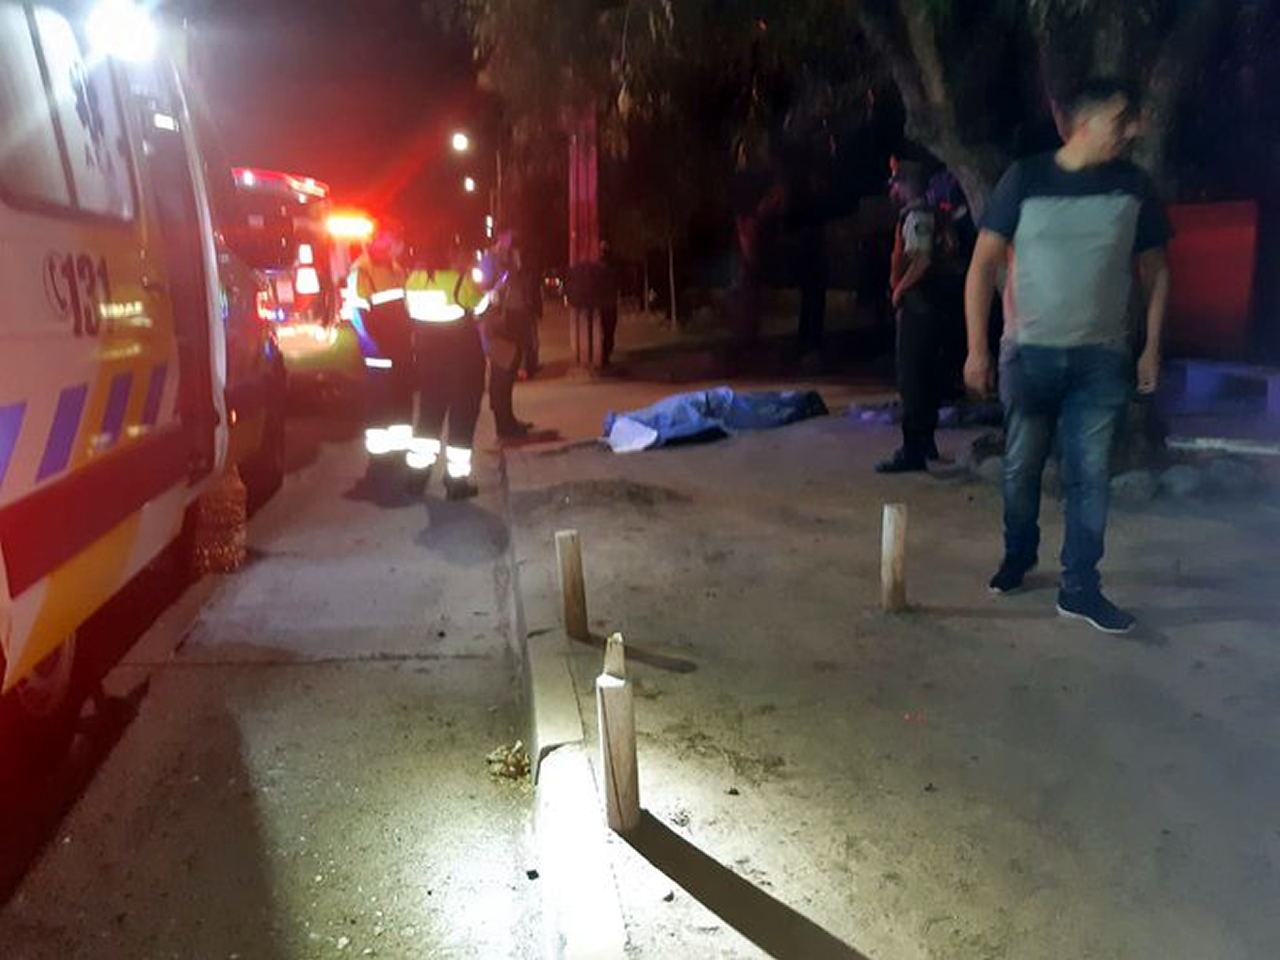 SAN FELIPE: Peatón muere tras ser atropellado en avenida Diego de Almagro